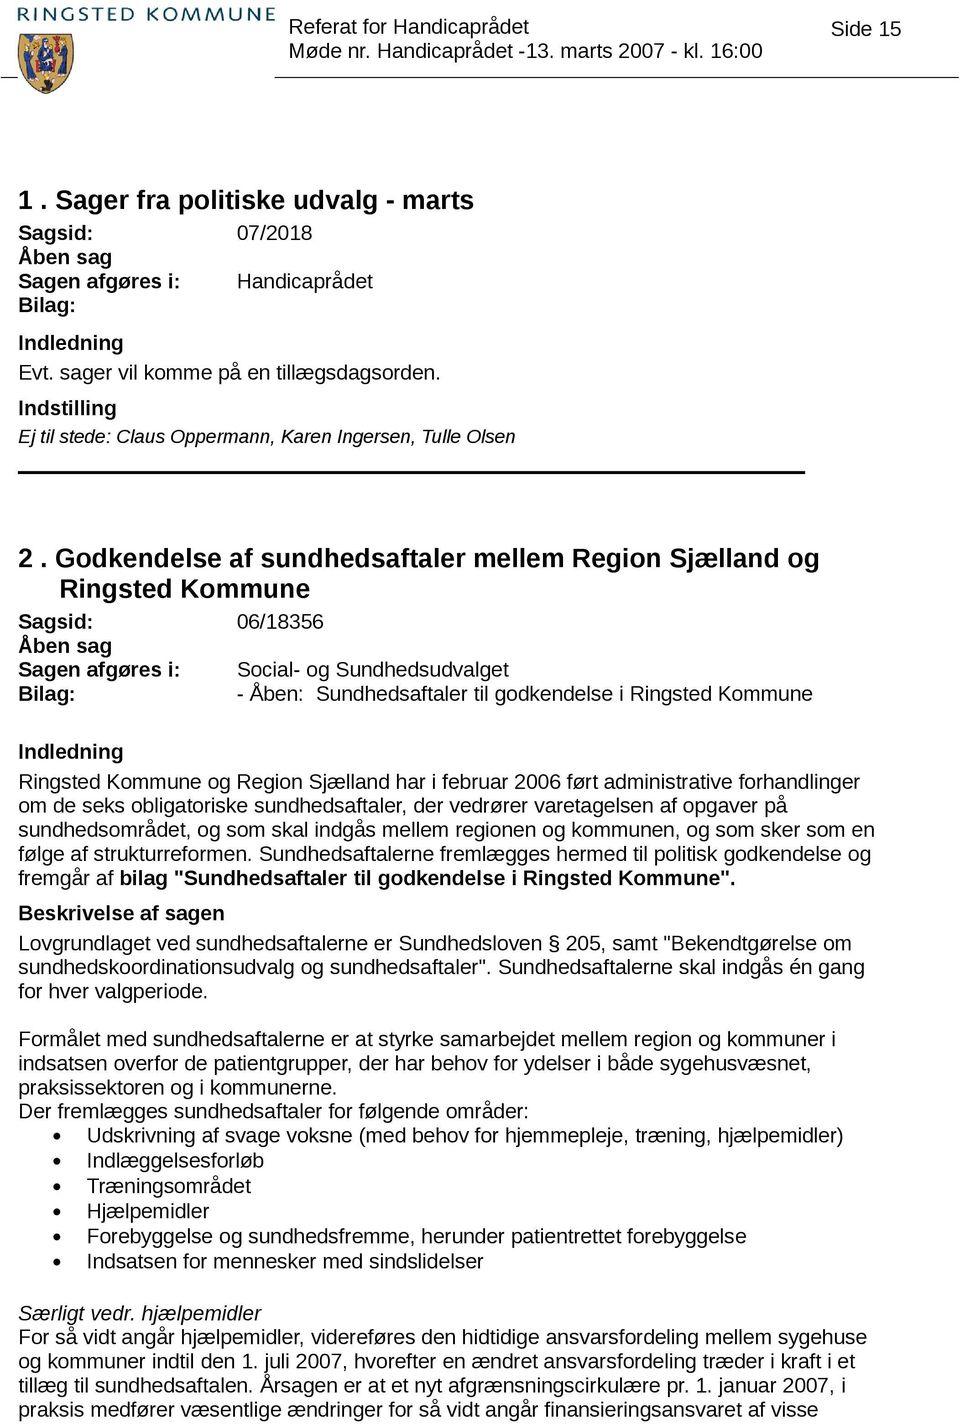 Region Sjælland har i februar 2006 ført administrative forhandlinger om de seks obligatoriske sundhedsaftaler, der vedrører varetagelsen af opgaver på sundhedsområdet, og som skal indgås mellem